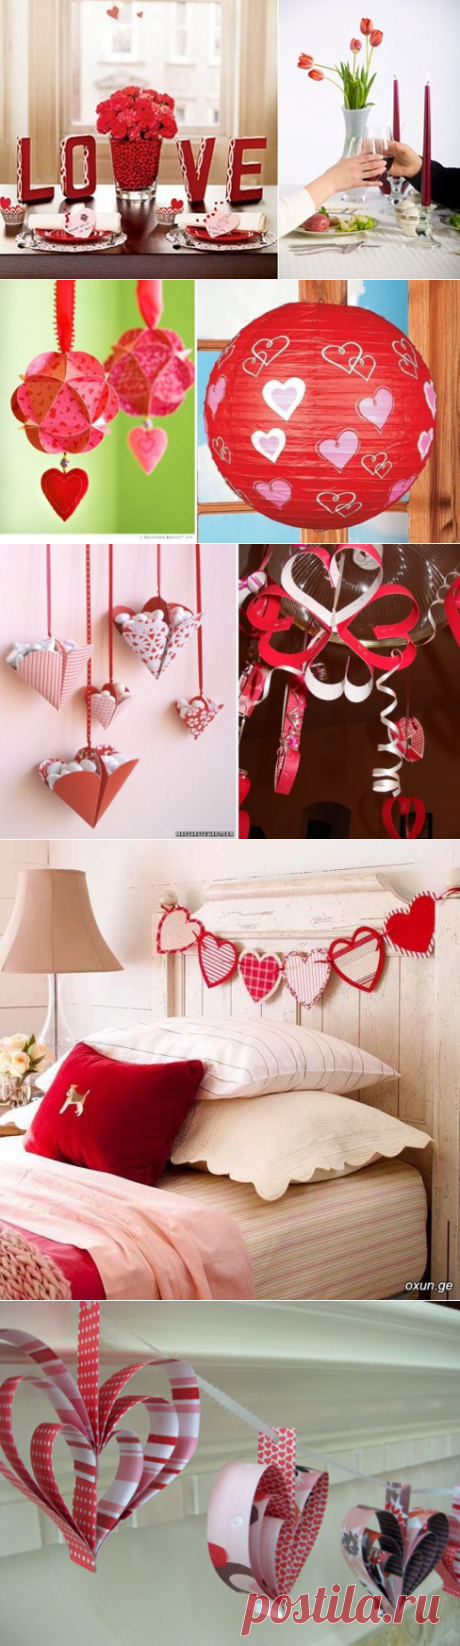 Как украсить квартиру к Дню Святого Валентина?